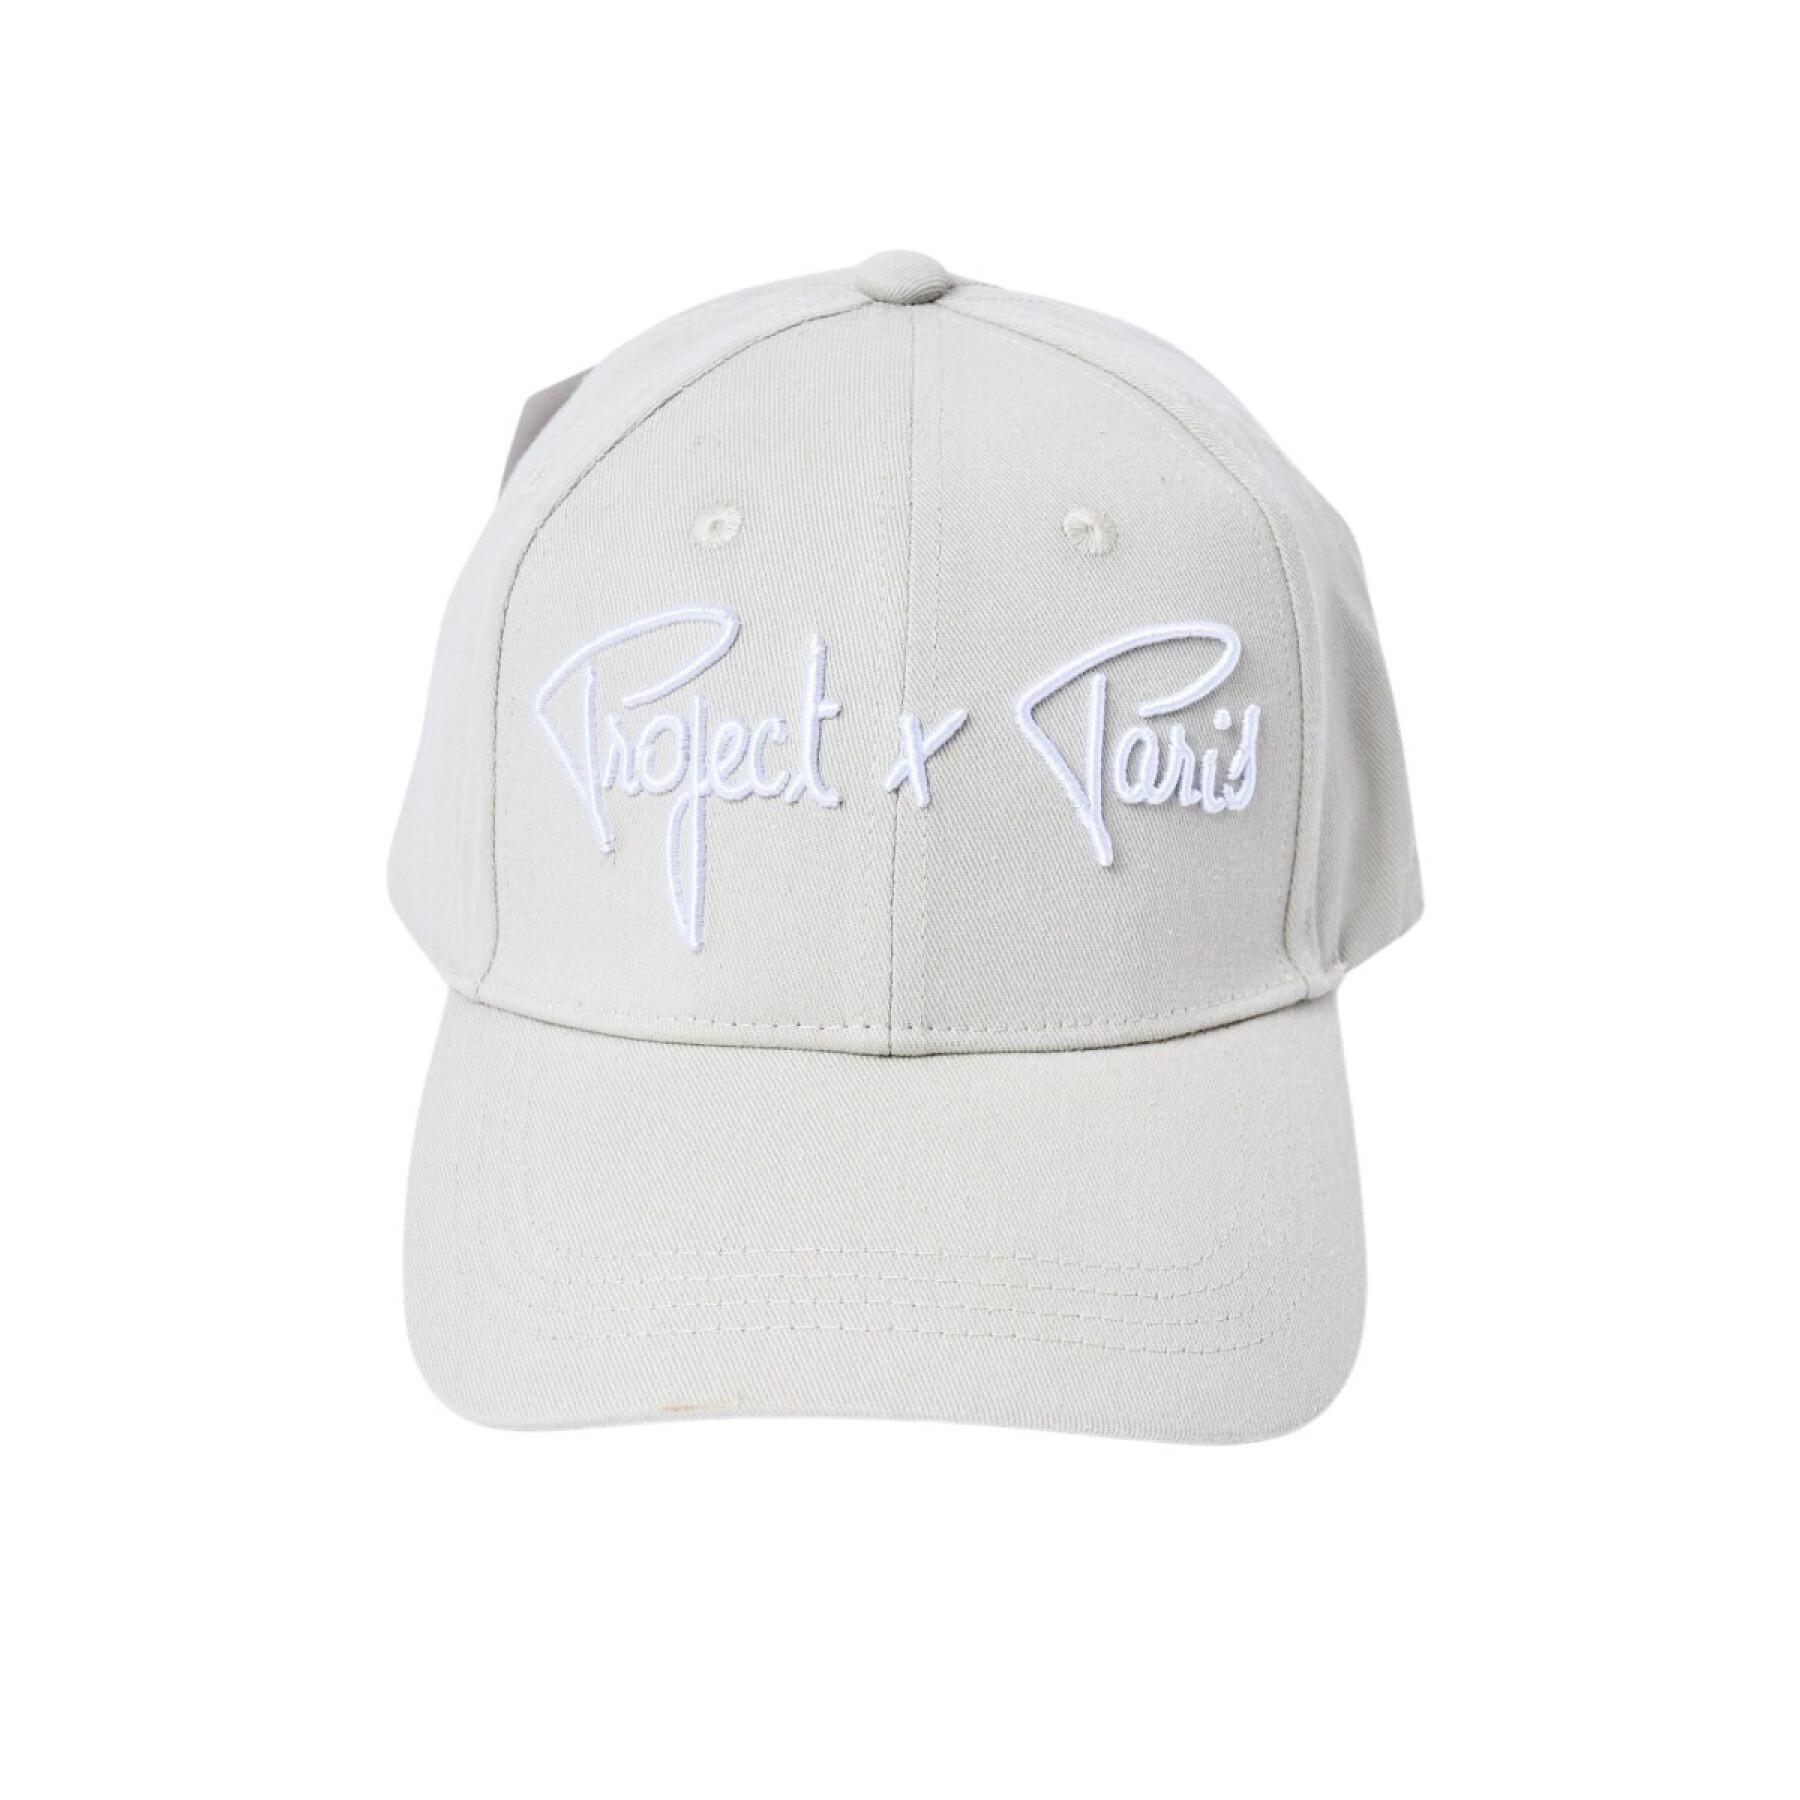 Adjustable cap with signature trim Project X Paris